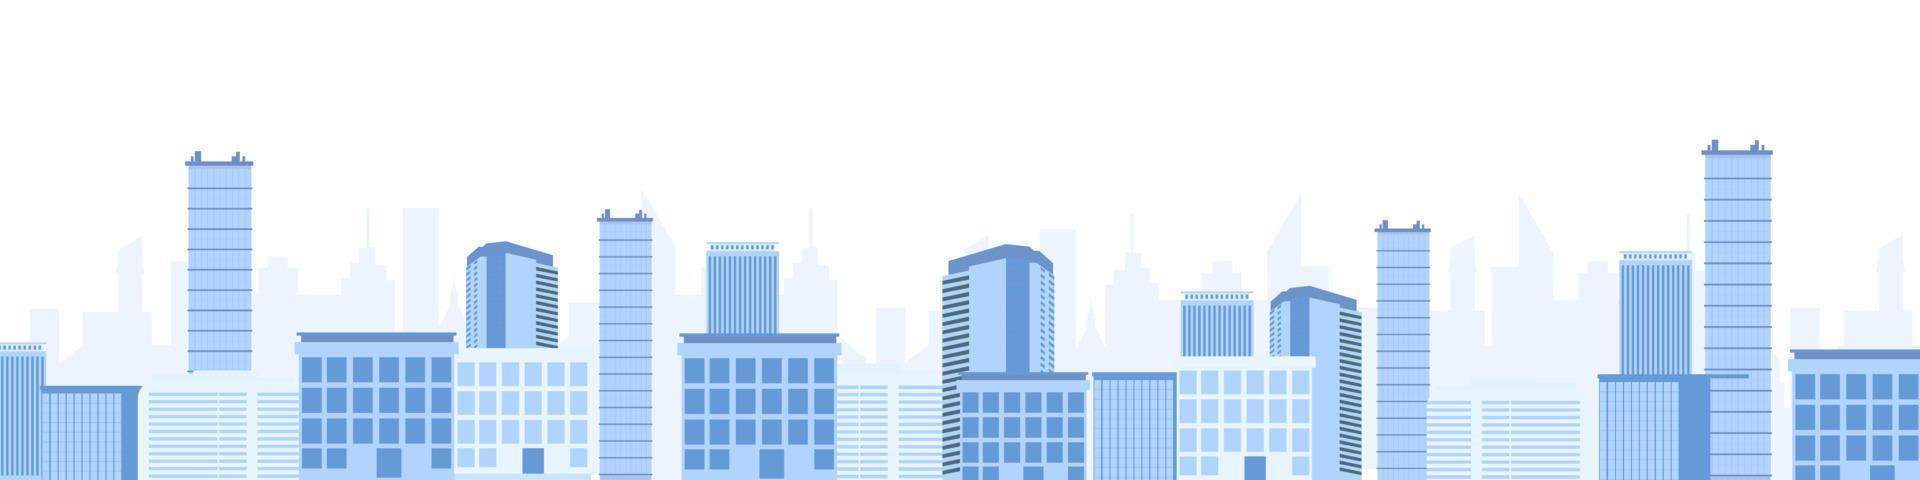 paisagem da cidade com arranha-céus. metrópole moderna com edifícios industriais e residenciais azuis vetor